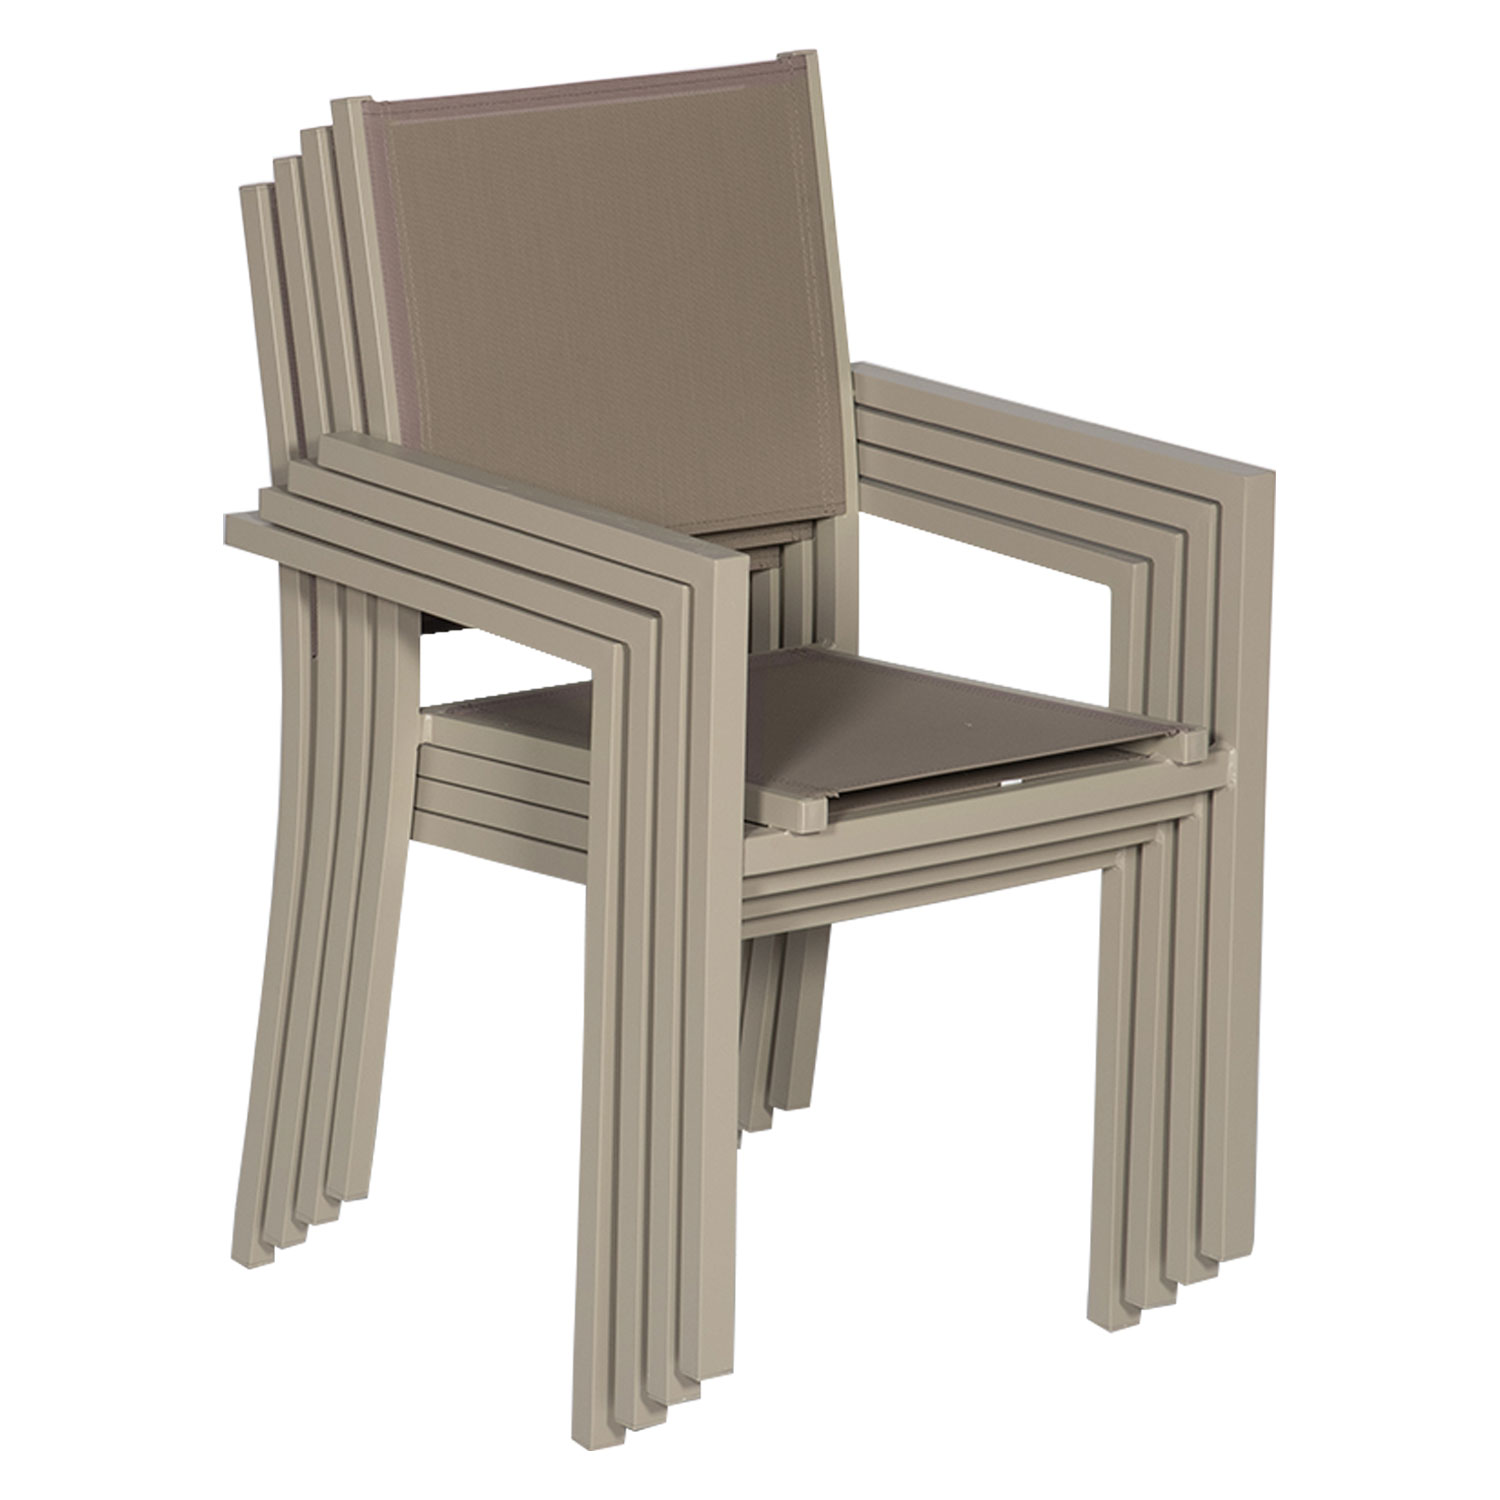 Juego de 6 sillas de aluminio color topo - Textileno topo